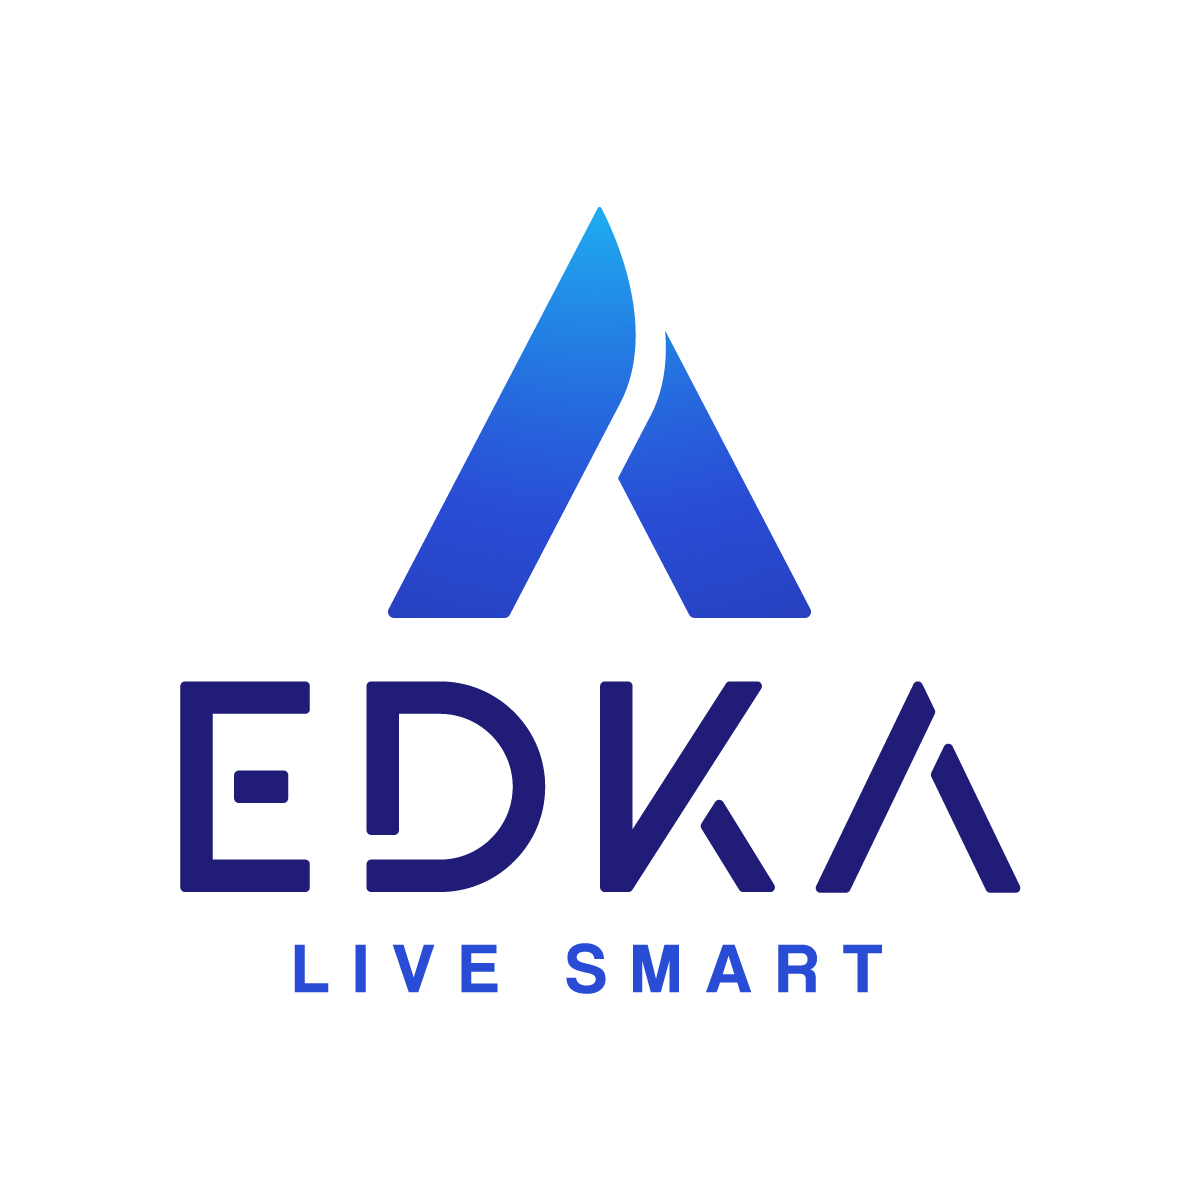 Edka Digital Co., Ltd